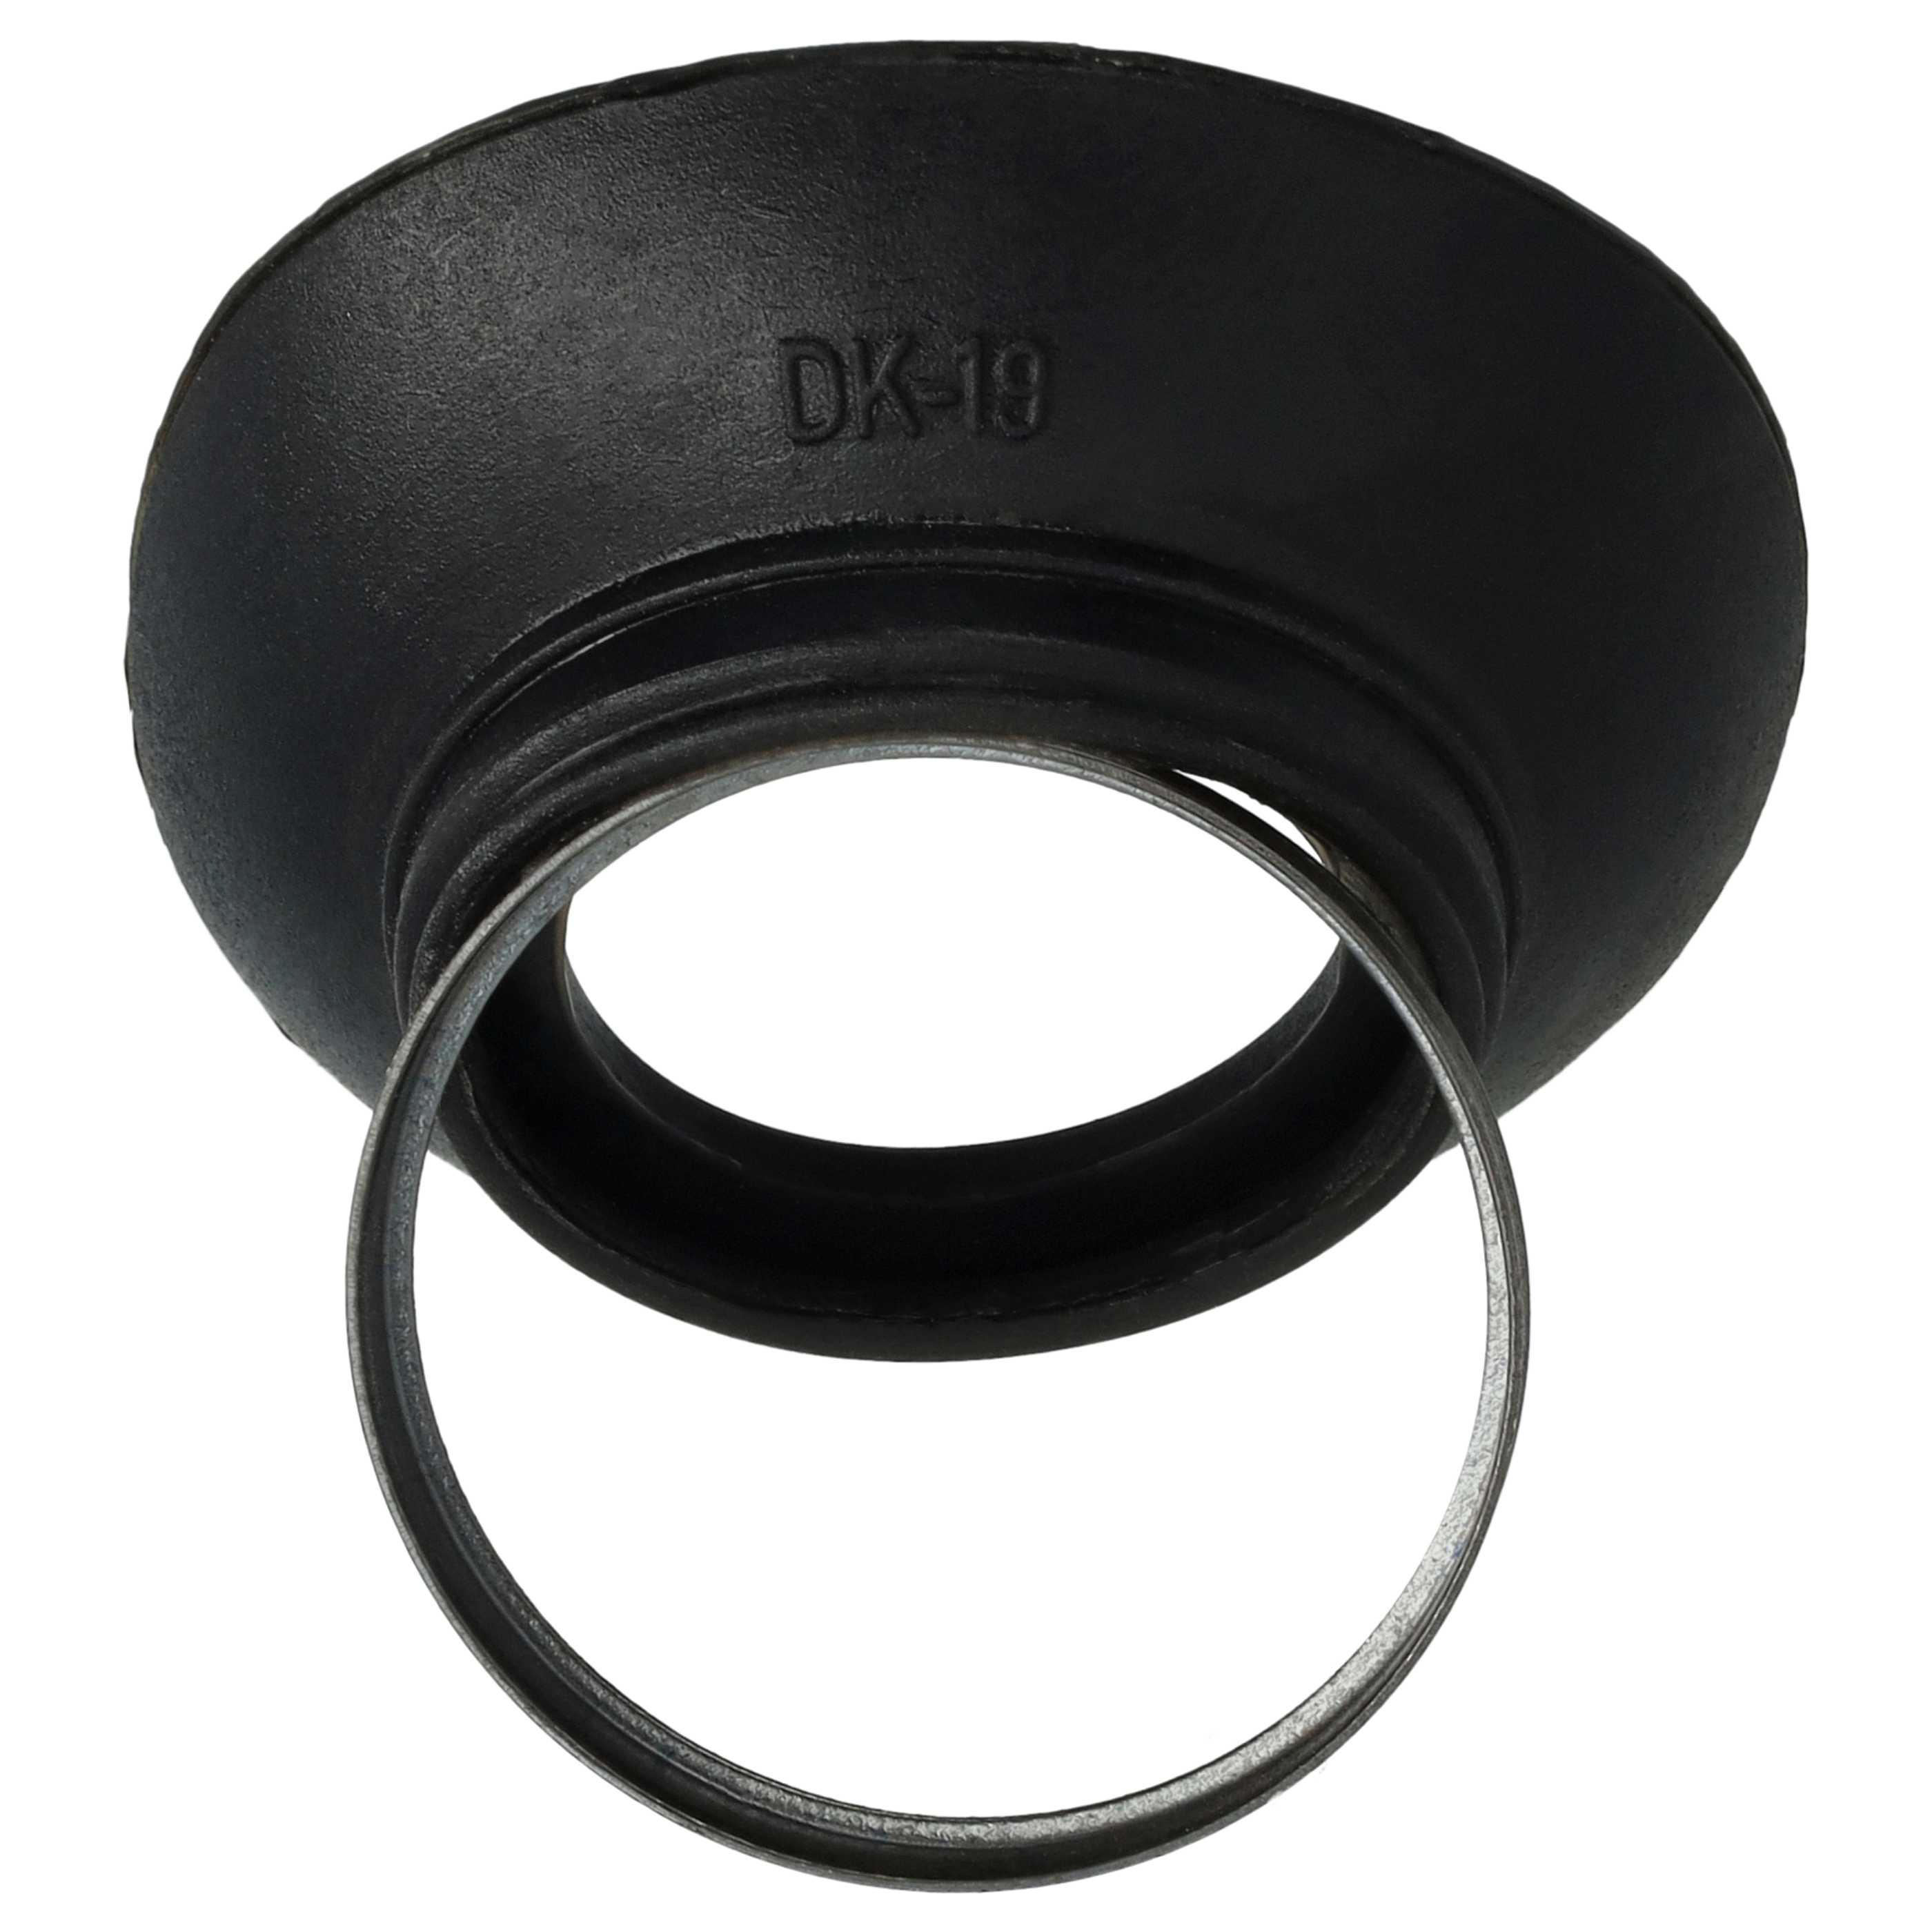 Conchiglia oculare sostituisce Nikon DK-19 compatibile con D810a Nikon - plastica